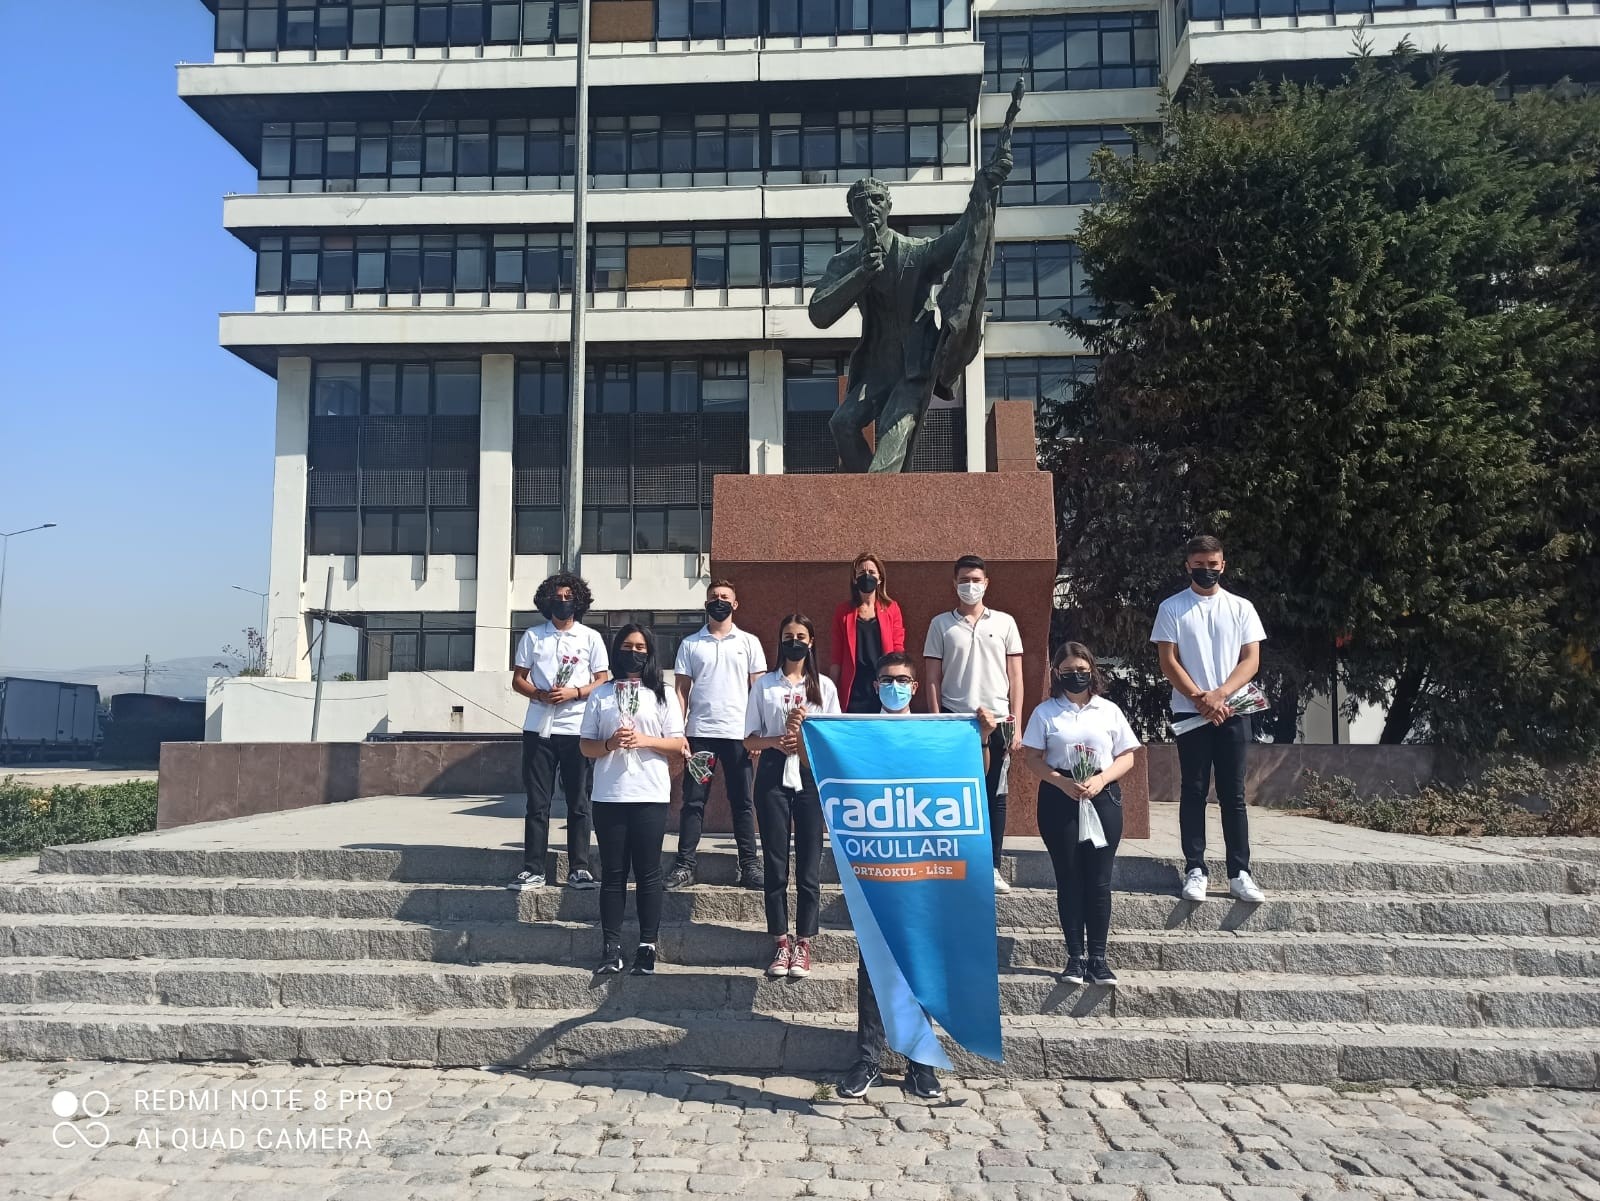 Radikal Okulları öğrencileri, İzmir’in kurtuluşunu ders olarak yerinde işlediler